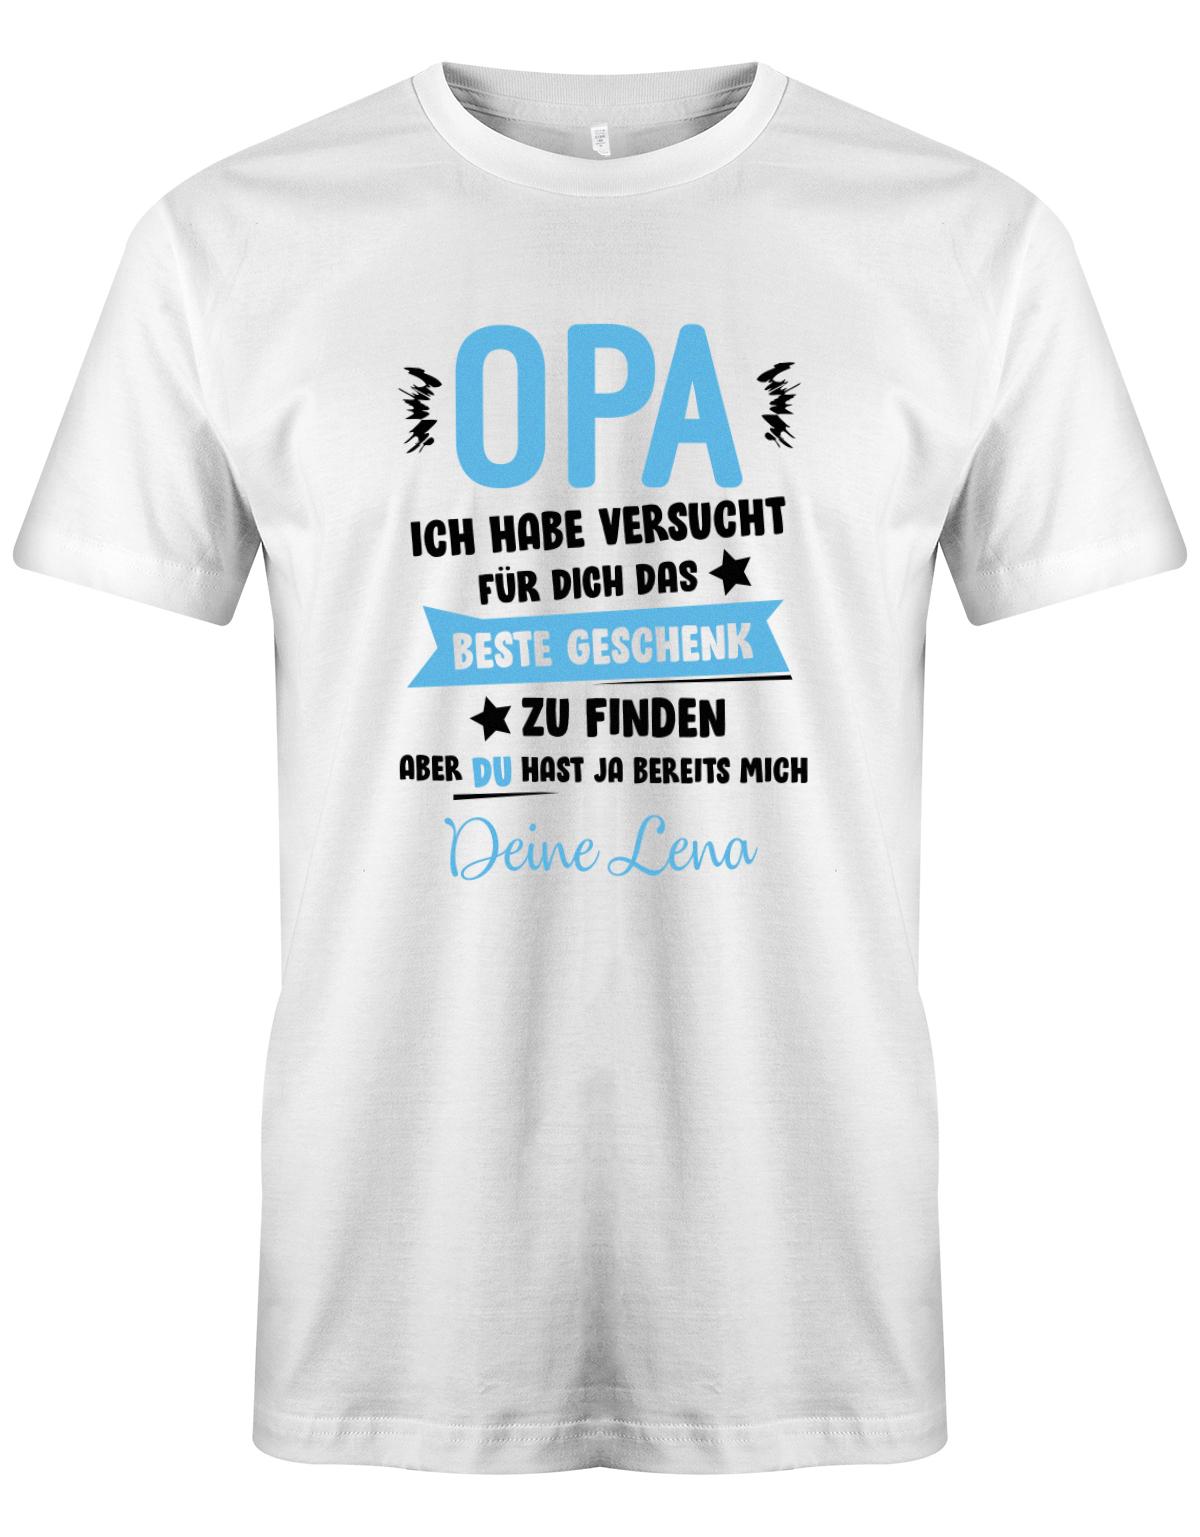 Opa Shirt personalisiert - Opa ich habe versucht, das beste Geschenk für dich zu finden, aber du hast ja bereits mich. Name vom Enkel.  Weiss